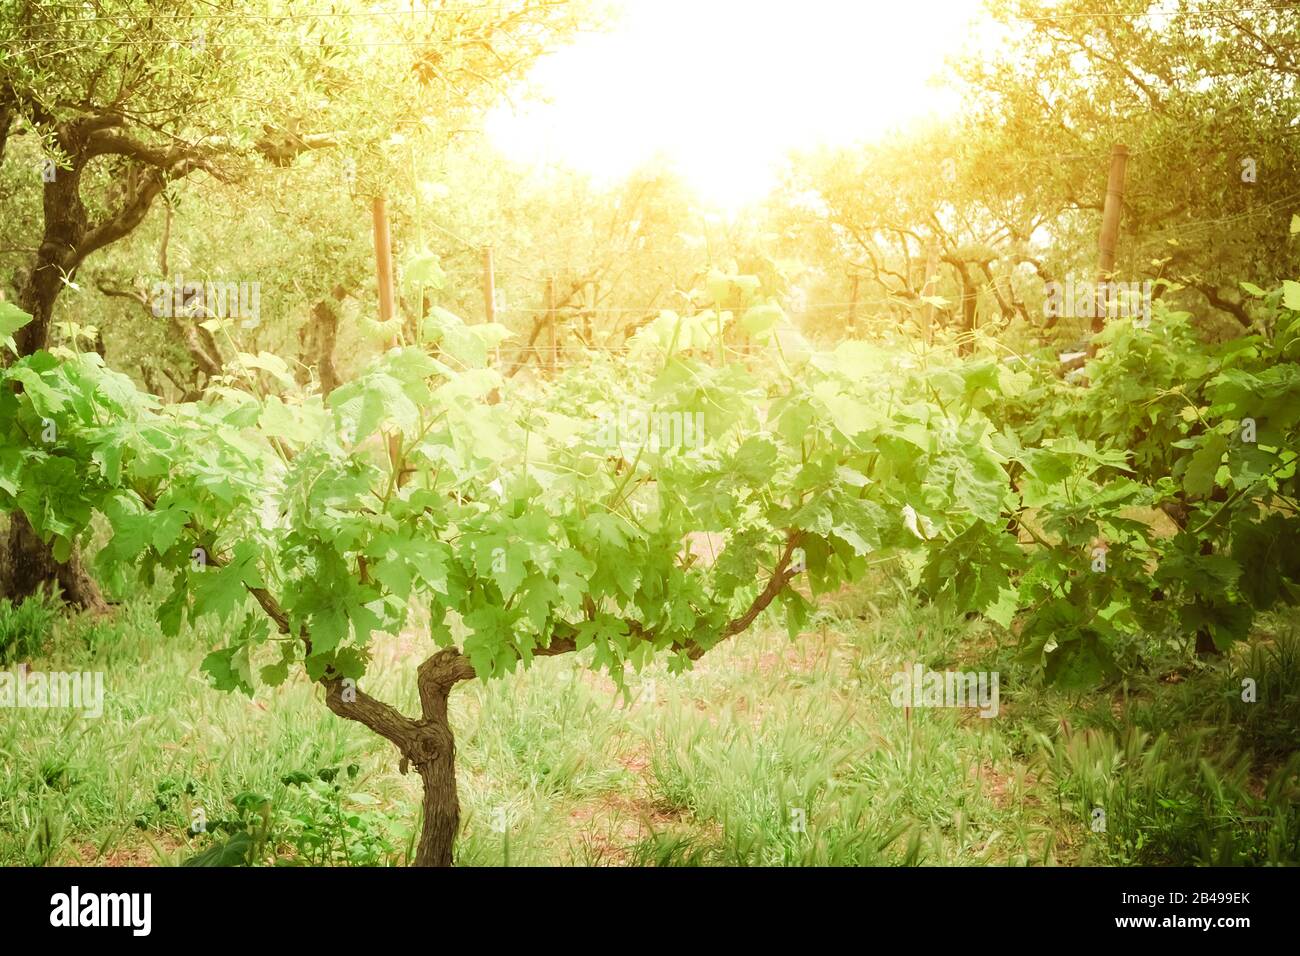 Schöner sonniger Tag auf der Traubenplantage auf der Insel Crete. Griechenland. Traditioneller Weinberg und Weingut des mittelmeers. Ökologische Landwirtschaft und natürliche FA Stockfoto